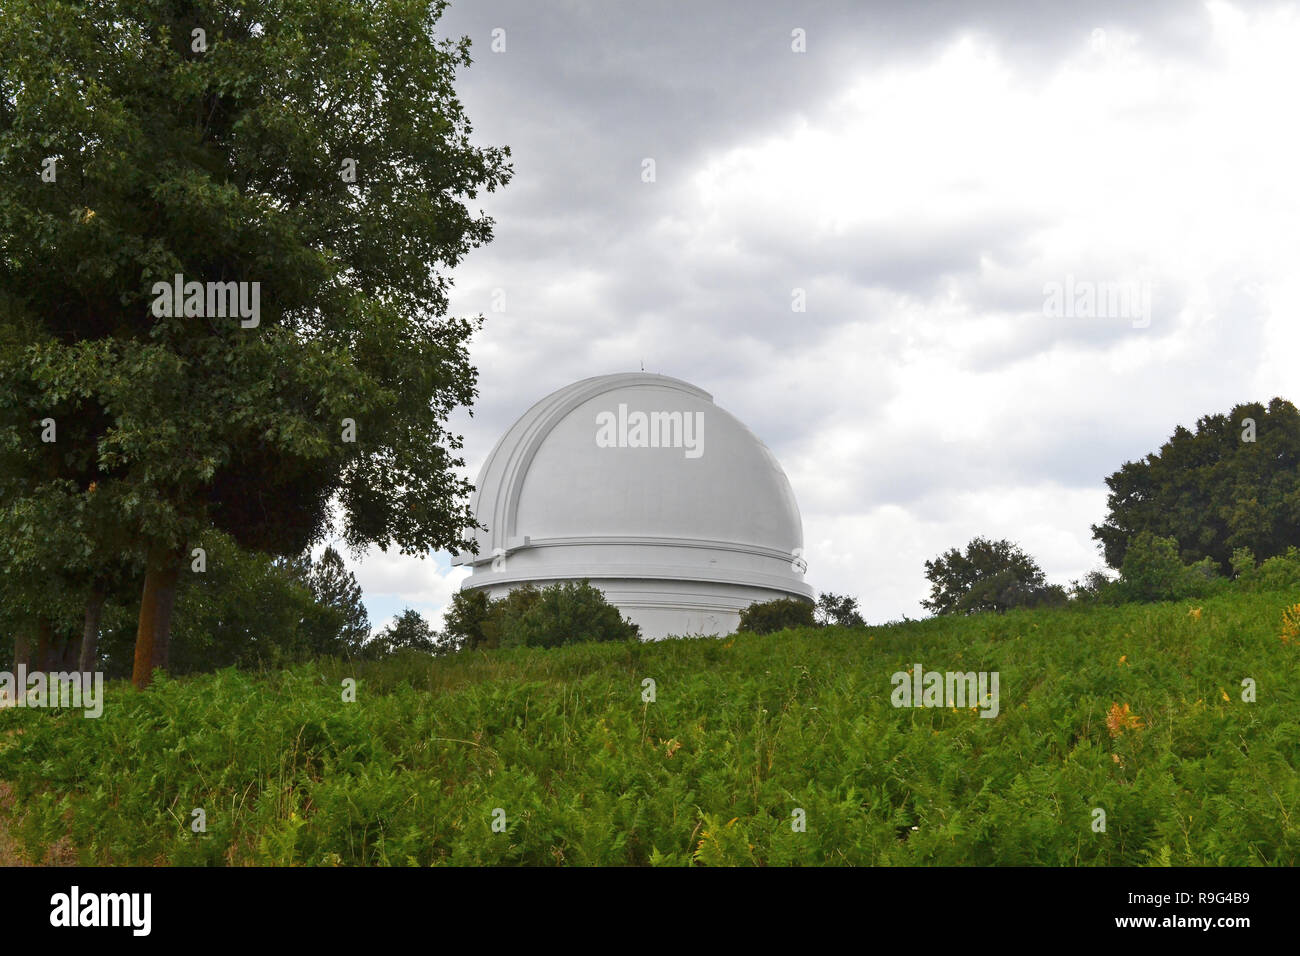 Un après-midi pluvieux, orageux au Palomar historique Observatoire de la montagne, en Californie, le comté de San Diego. Juillet 2018. L'établissement est à 6 000 ft Banque D'Images